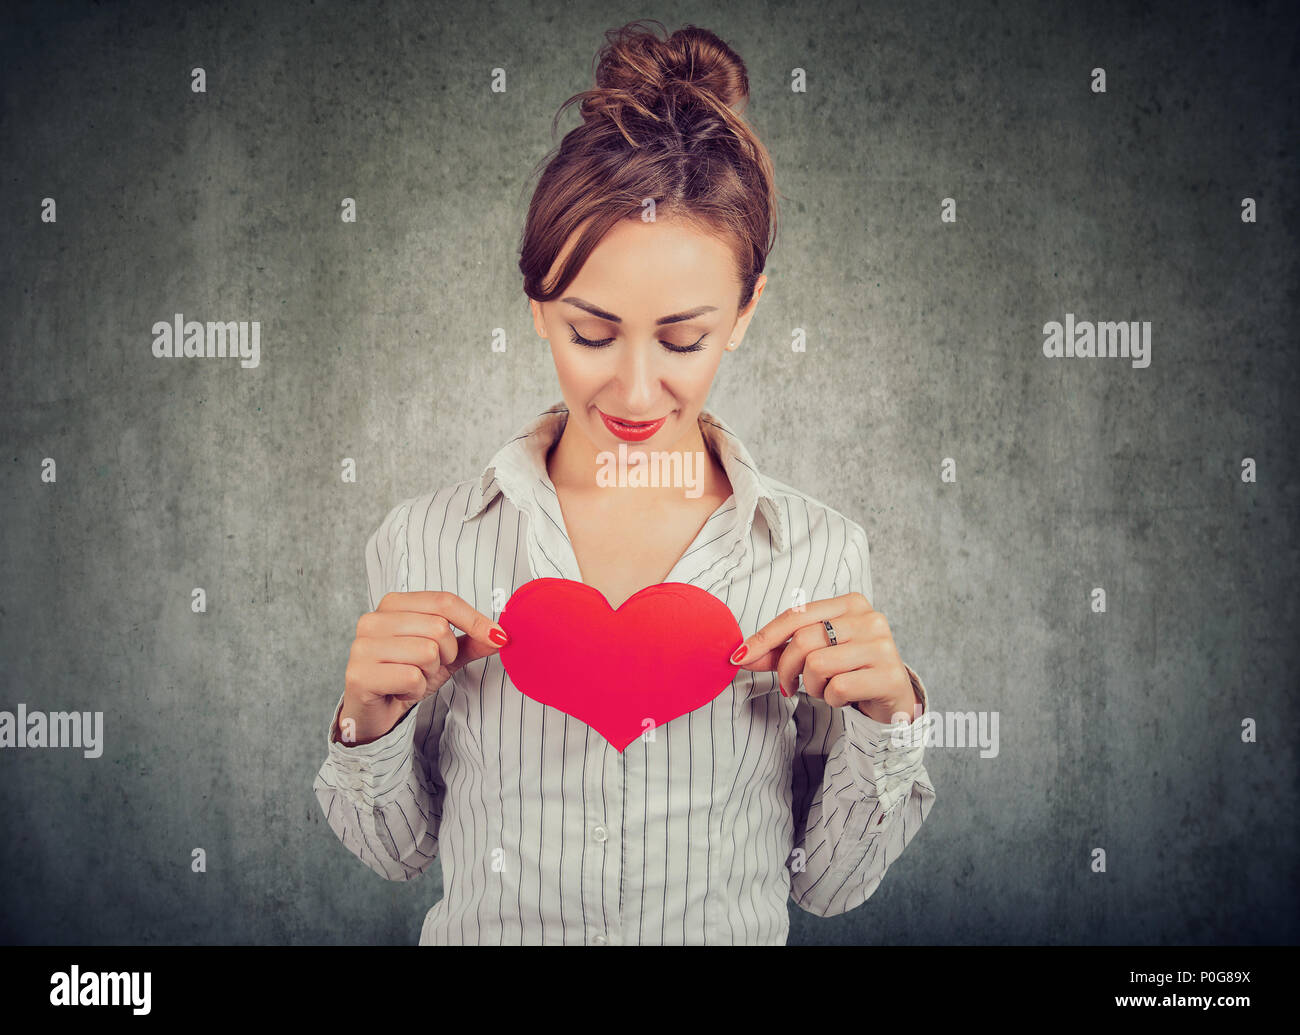 Hübsche Frau im Hemd Holding grosse rote Herz auf der Brust voll großer Gefühle auf grauem Hintergrund Stockfoto